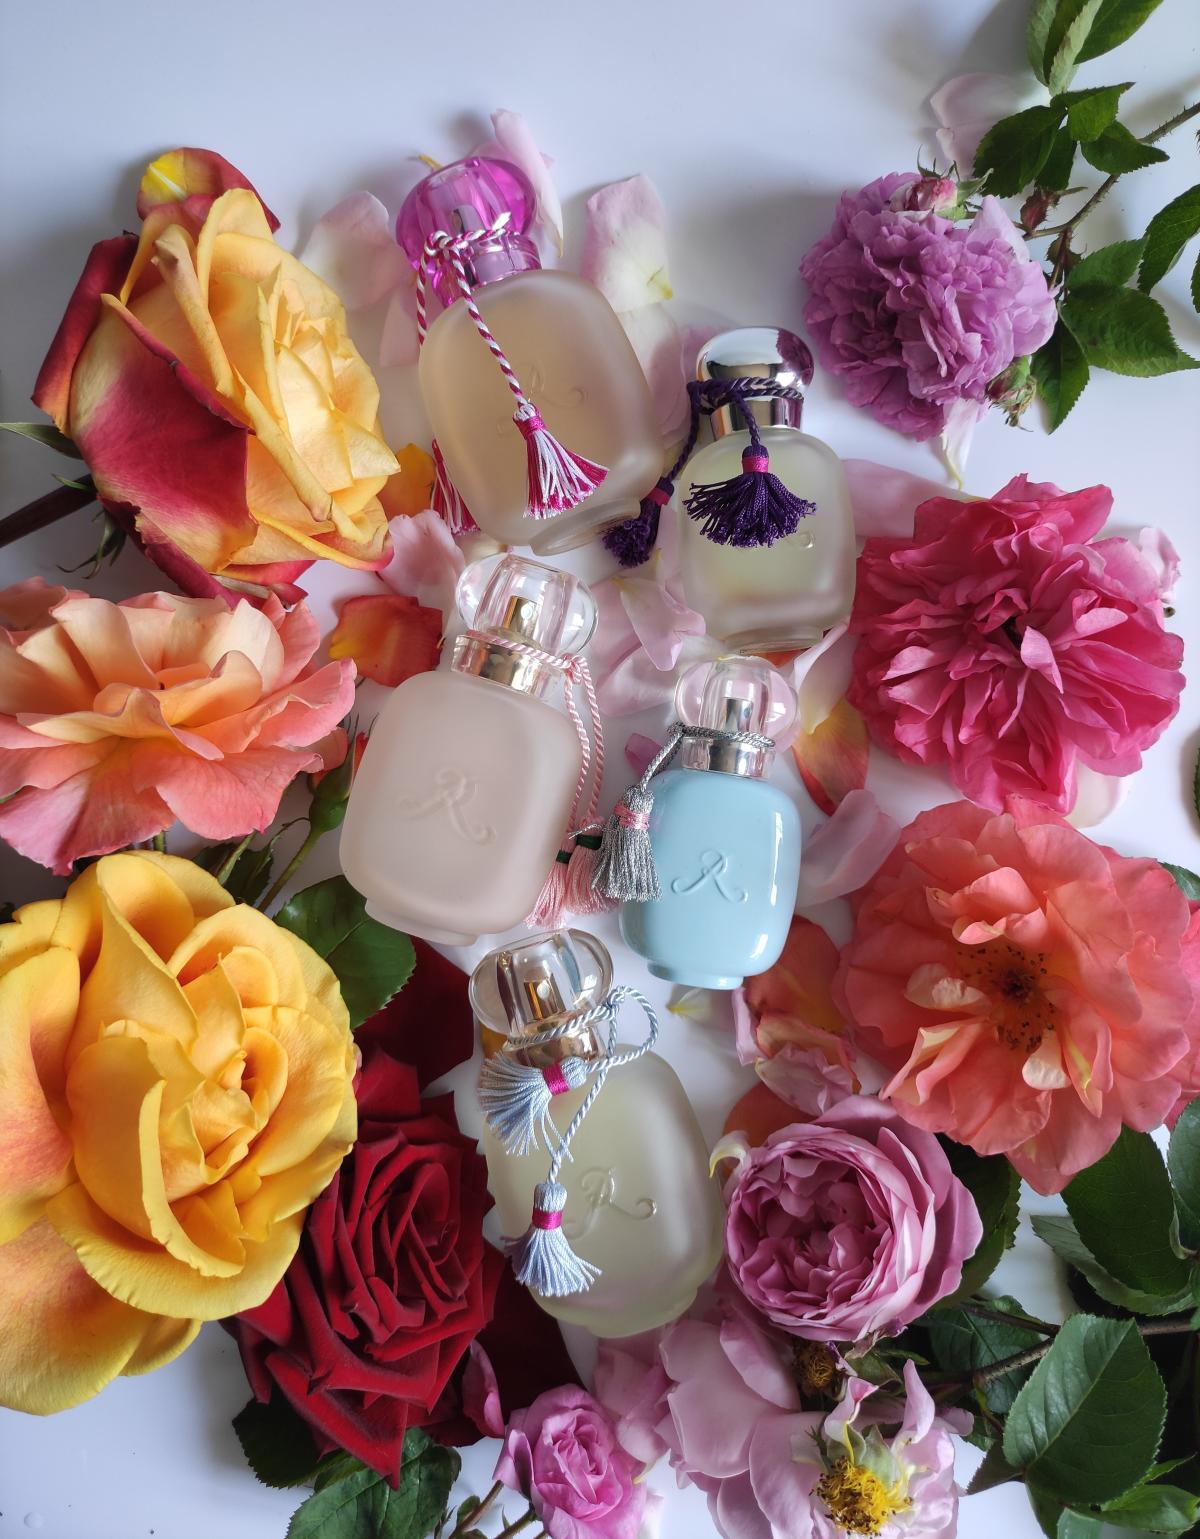 Ecume de Rose Les Parfums de Rosine perfume - a fragrance for women 2002